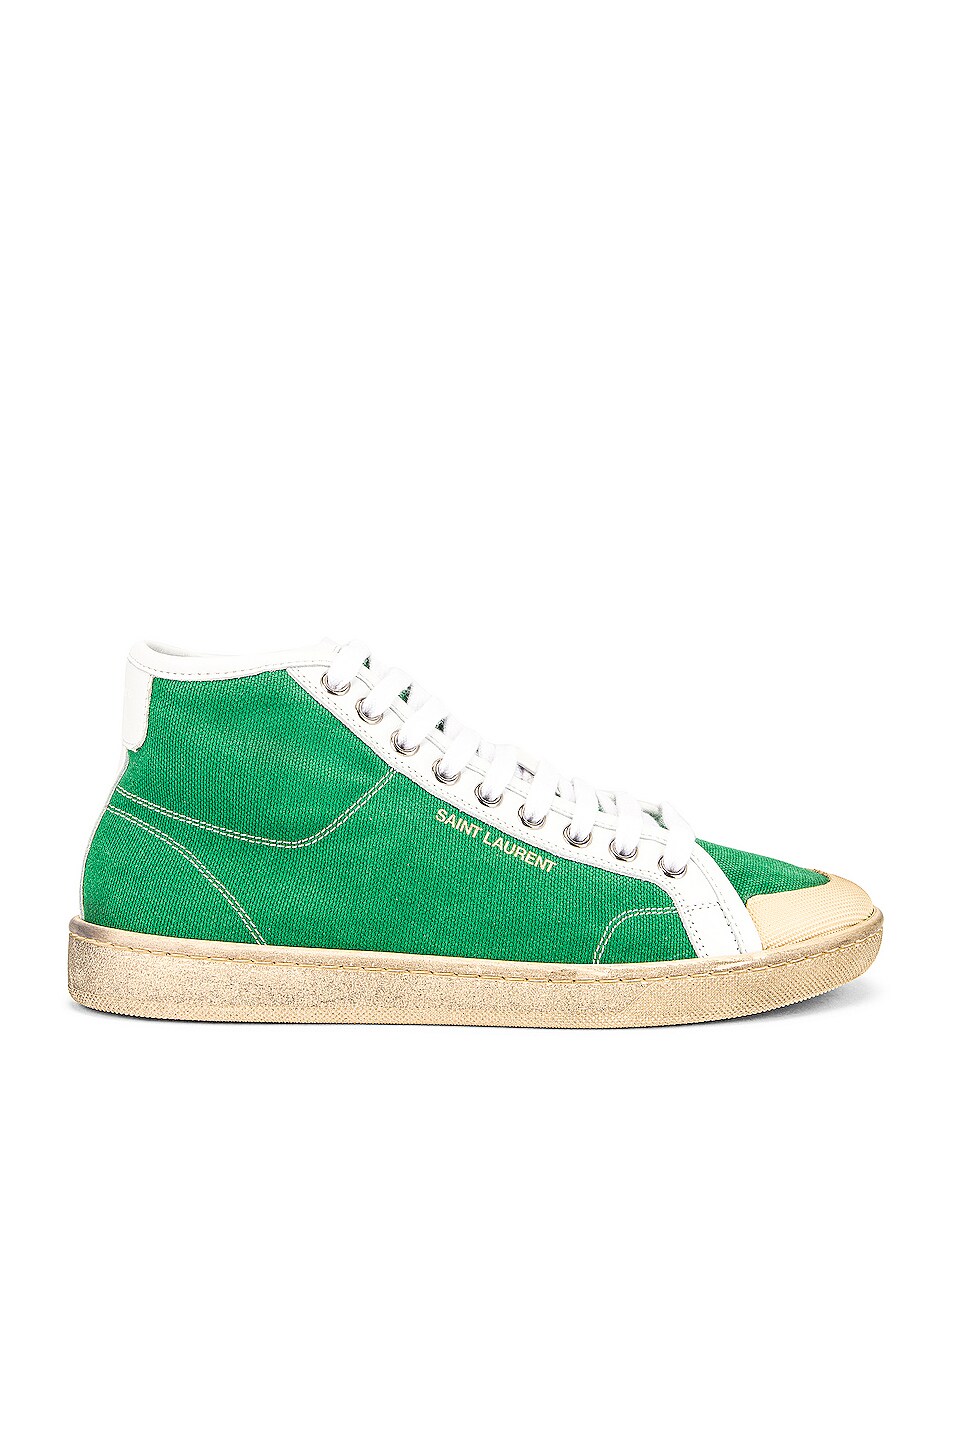 Image 1 of Saint Laurent SL39 Sneakers in Verde & Blanc Optique